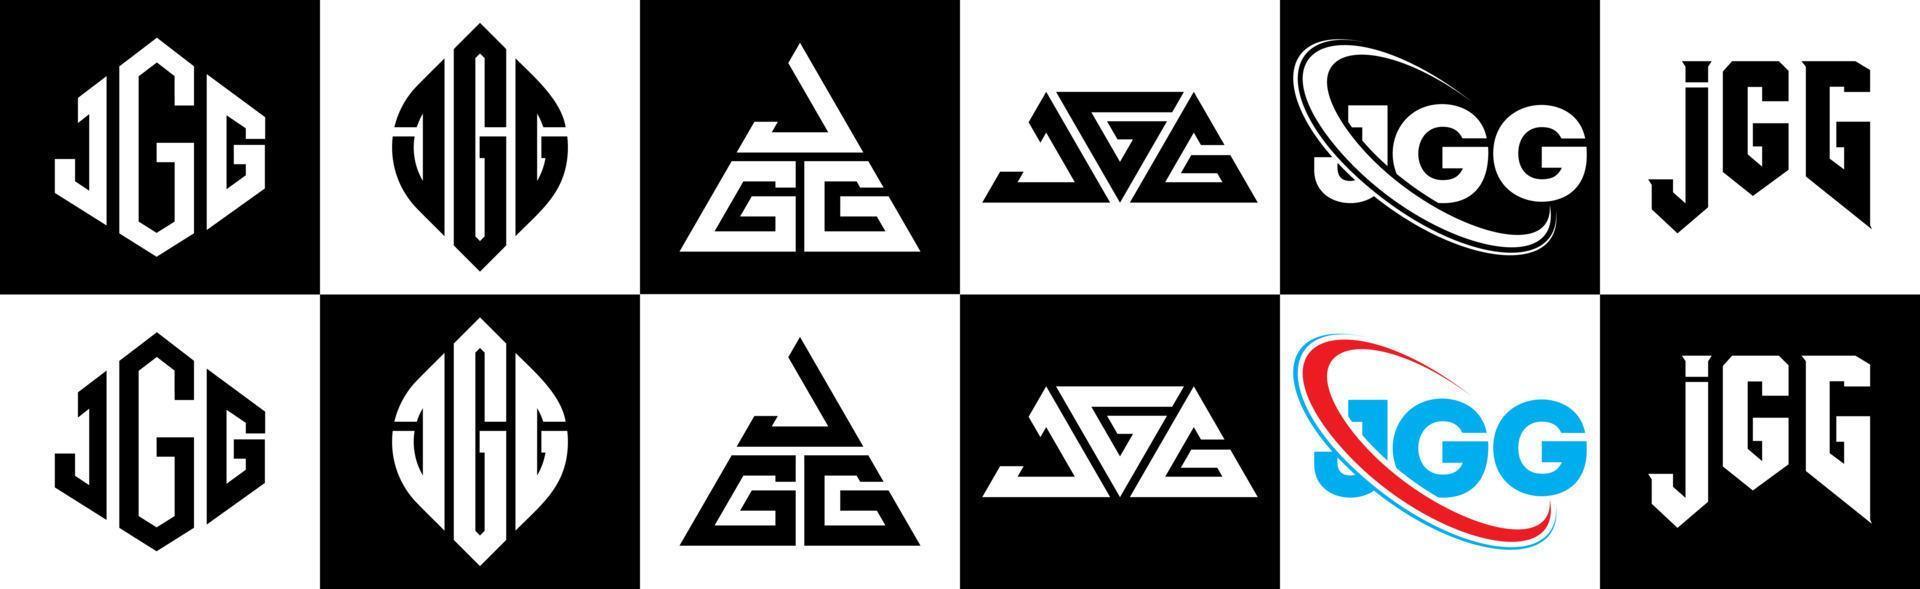 jgg-Buchstaben-Logo-Design in sechs Stilen. jgg Polygon, Kreis, Dreieck, Sechseck, flacher und einfacher Stil mit schwarz-weißem Buchstabenlogo in einer Zeichenfläche. jgg minimalistisches und klassisches Logo vektor